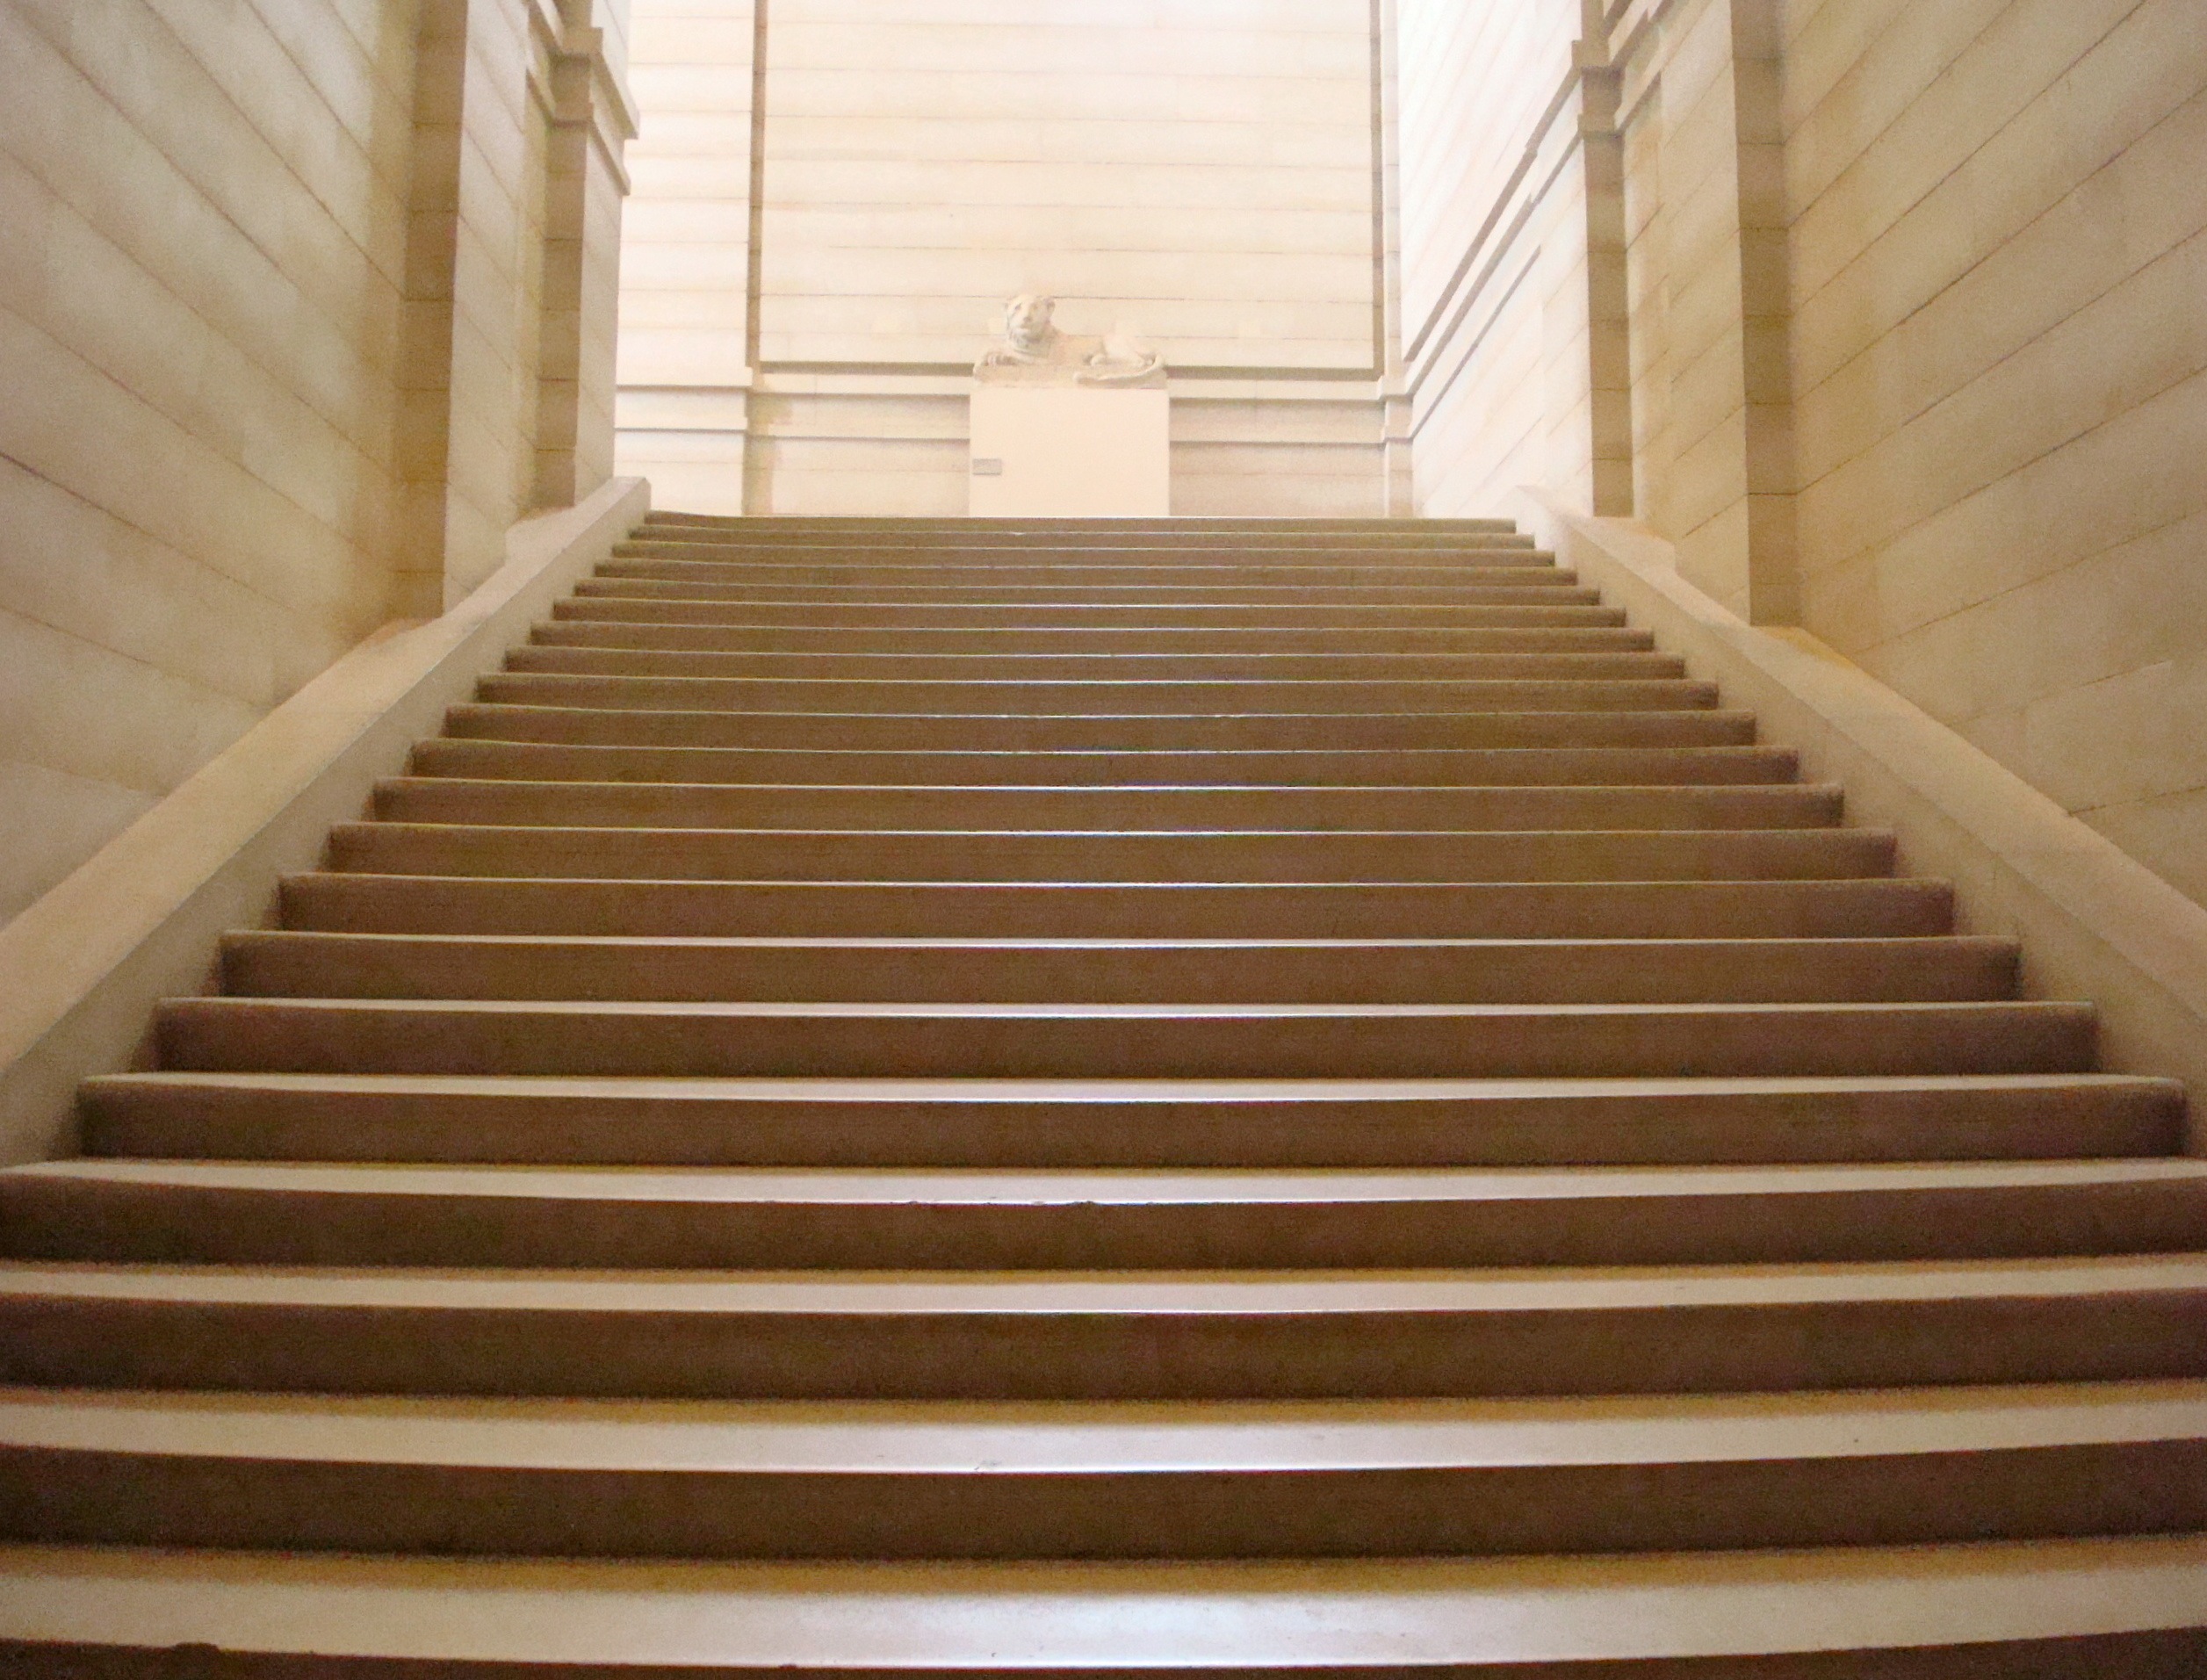 Paris-Louvre-marble-stairs.jpg